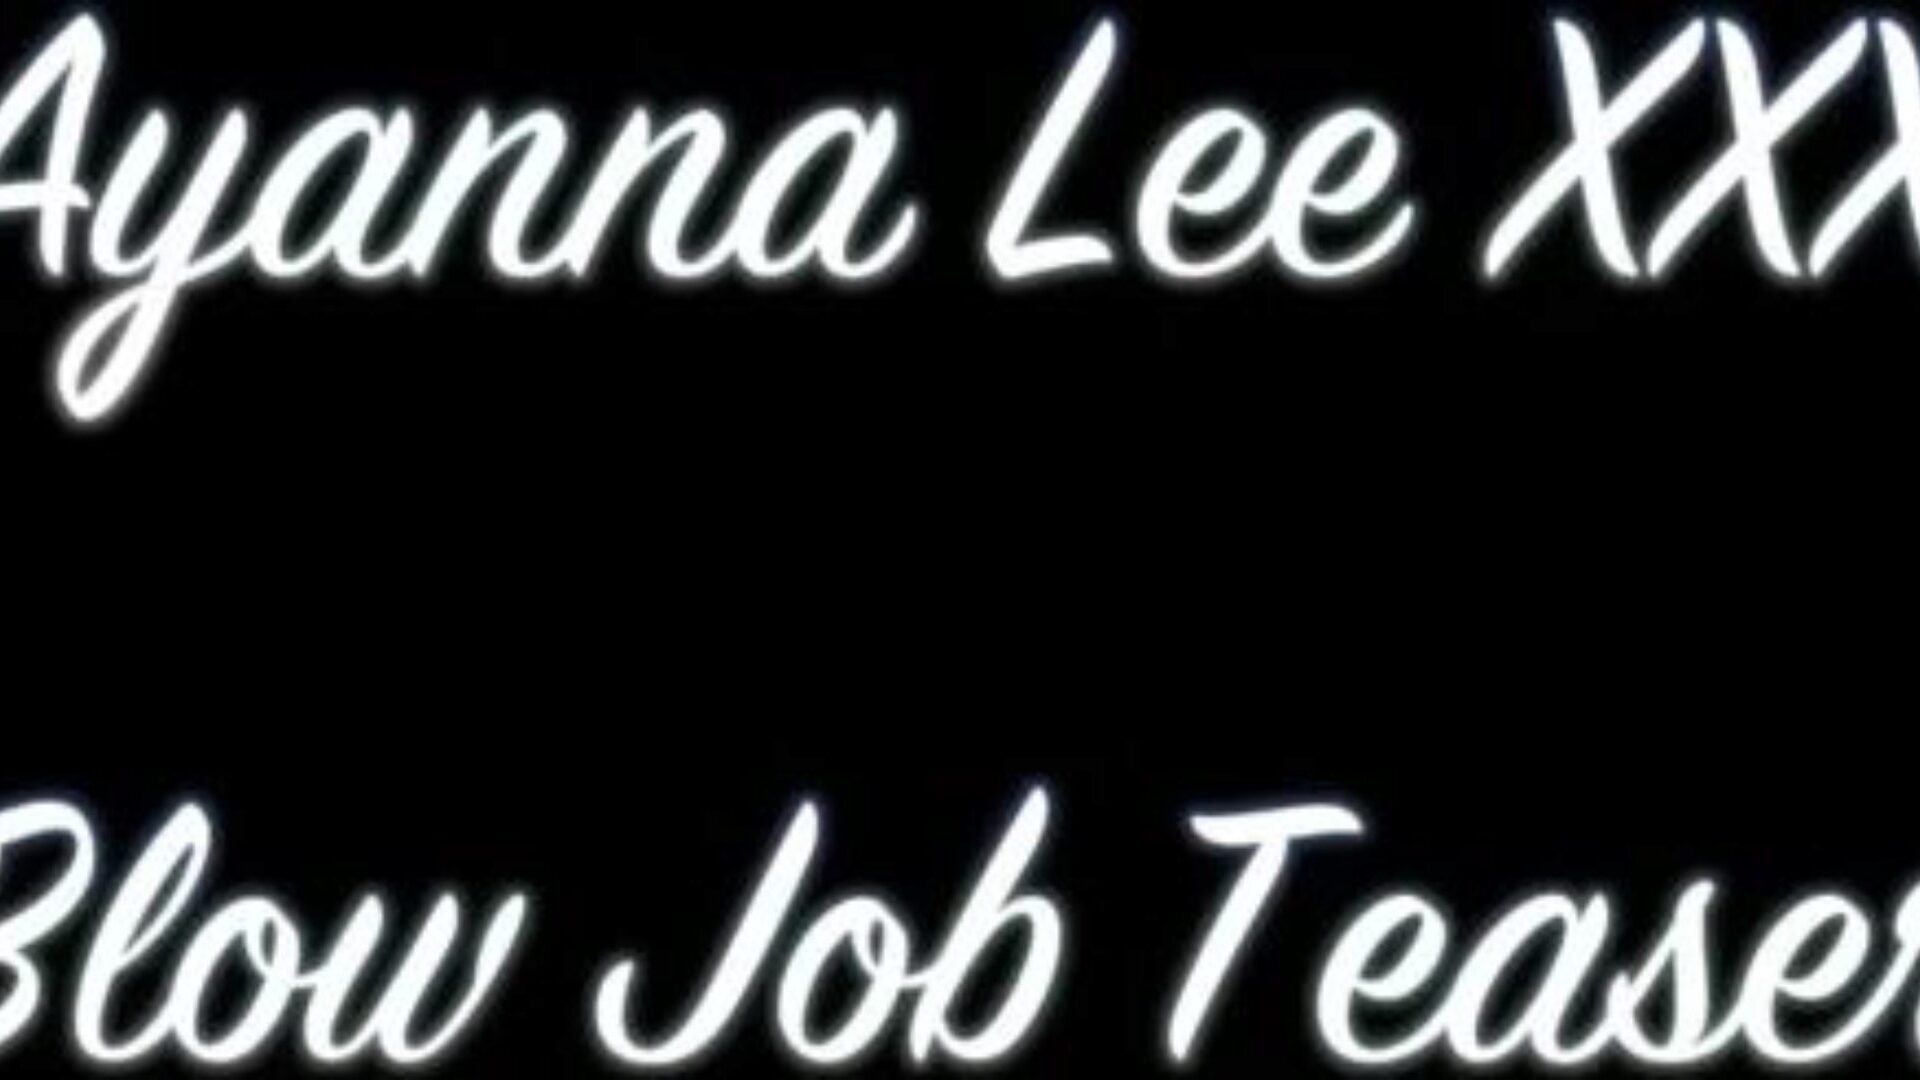 Ayanna Lee XXX - Blow Job Teaser (@WangWorldHD)